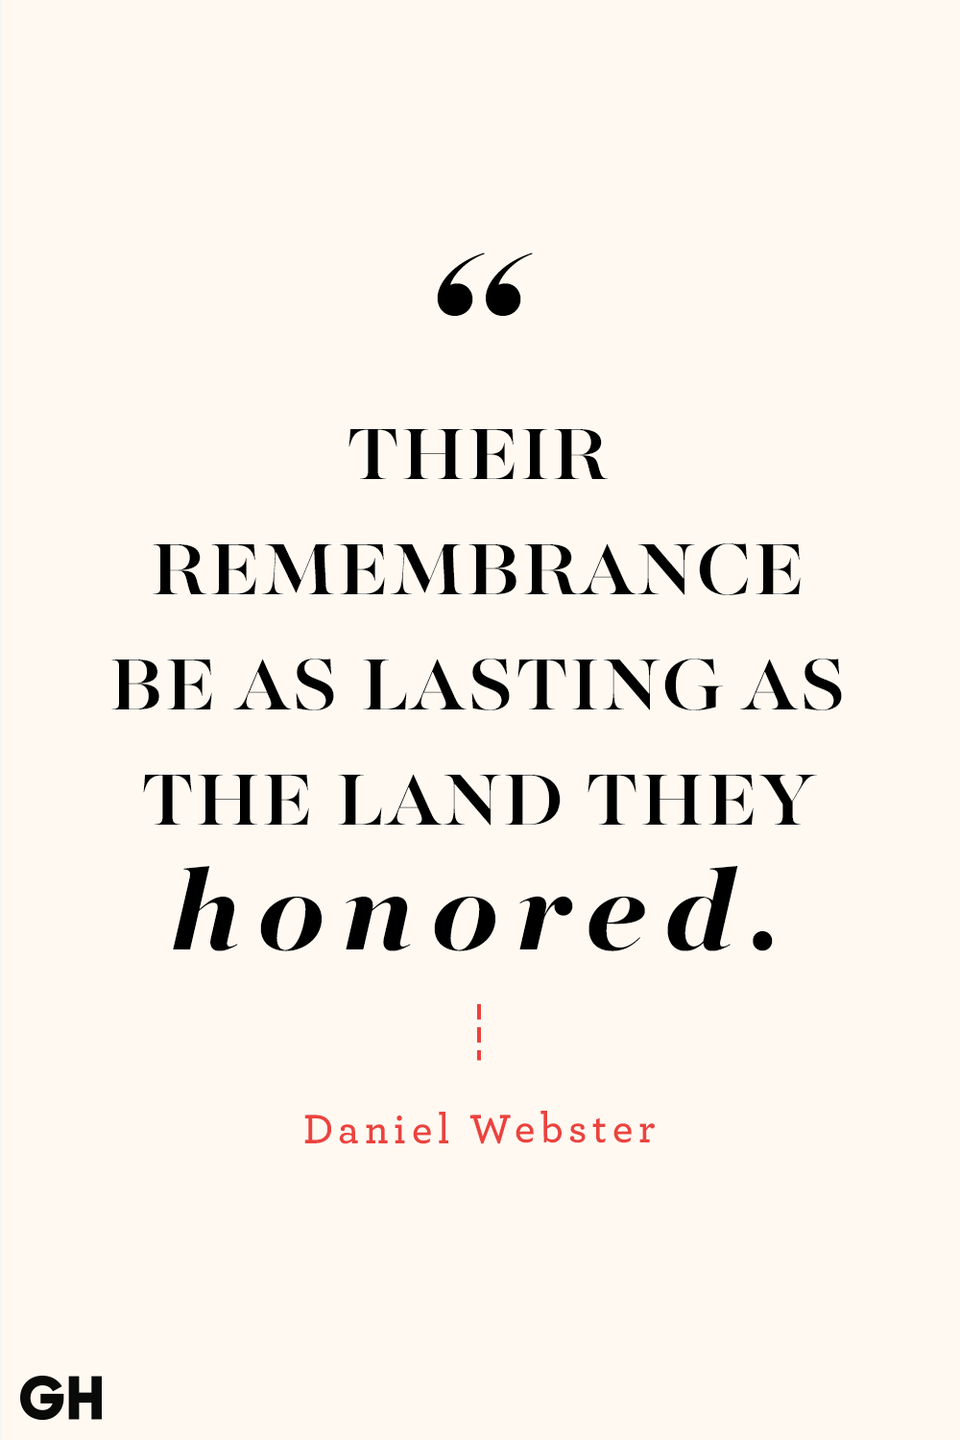 29) Daniel Webster